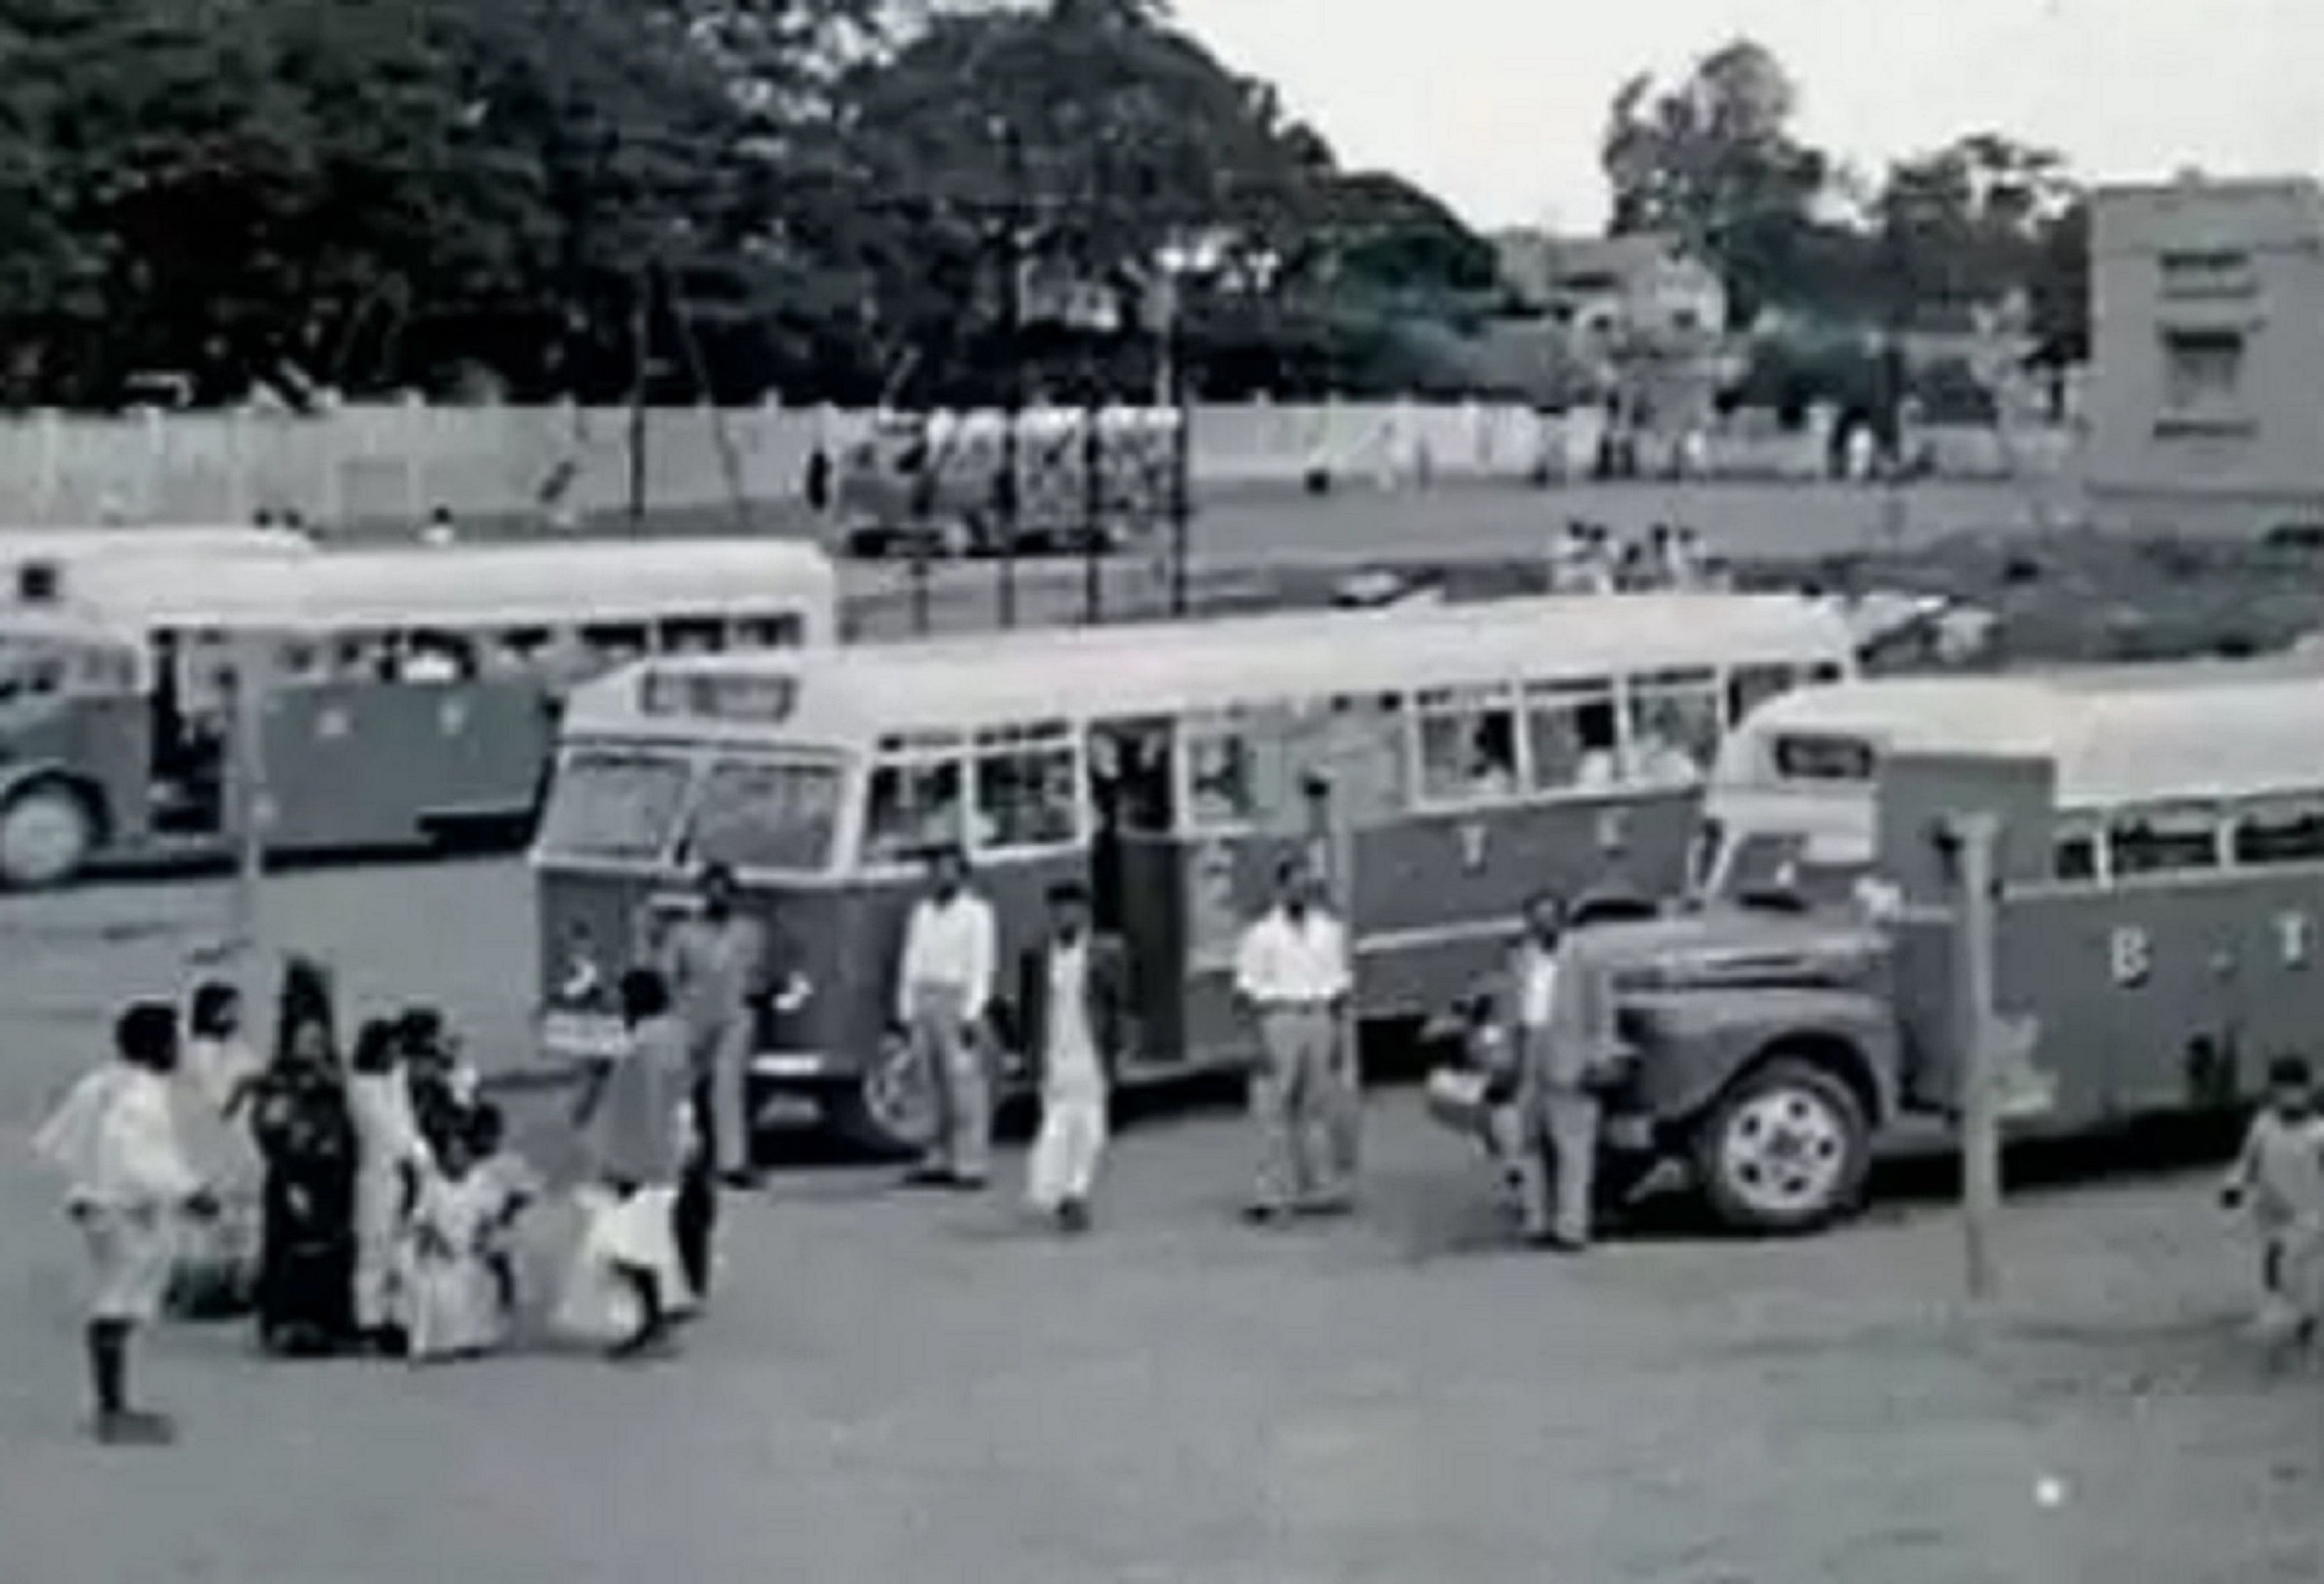 ಕೆ.ಆರ್‌. ಮಾರುಕಟ್ಟೆ–ಮೆಜೆಸ್ಟಿಕ್‌ ನಡುವೆ 1940ರಲ್ಲಿ ಬಿಟಿಸಿ ಬಸ್‌ ಸಂಚಾರ ಆರಂಭವಾಗಿತ್ತು